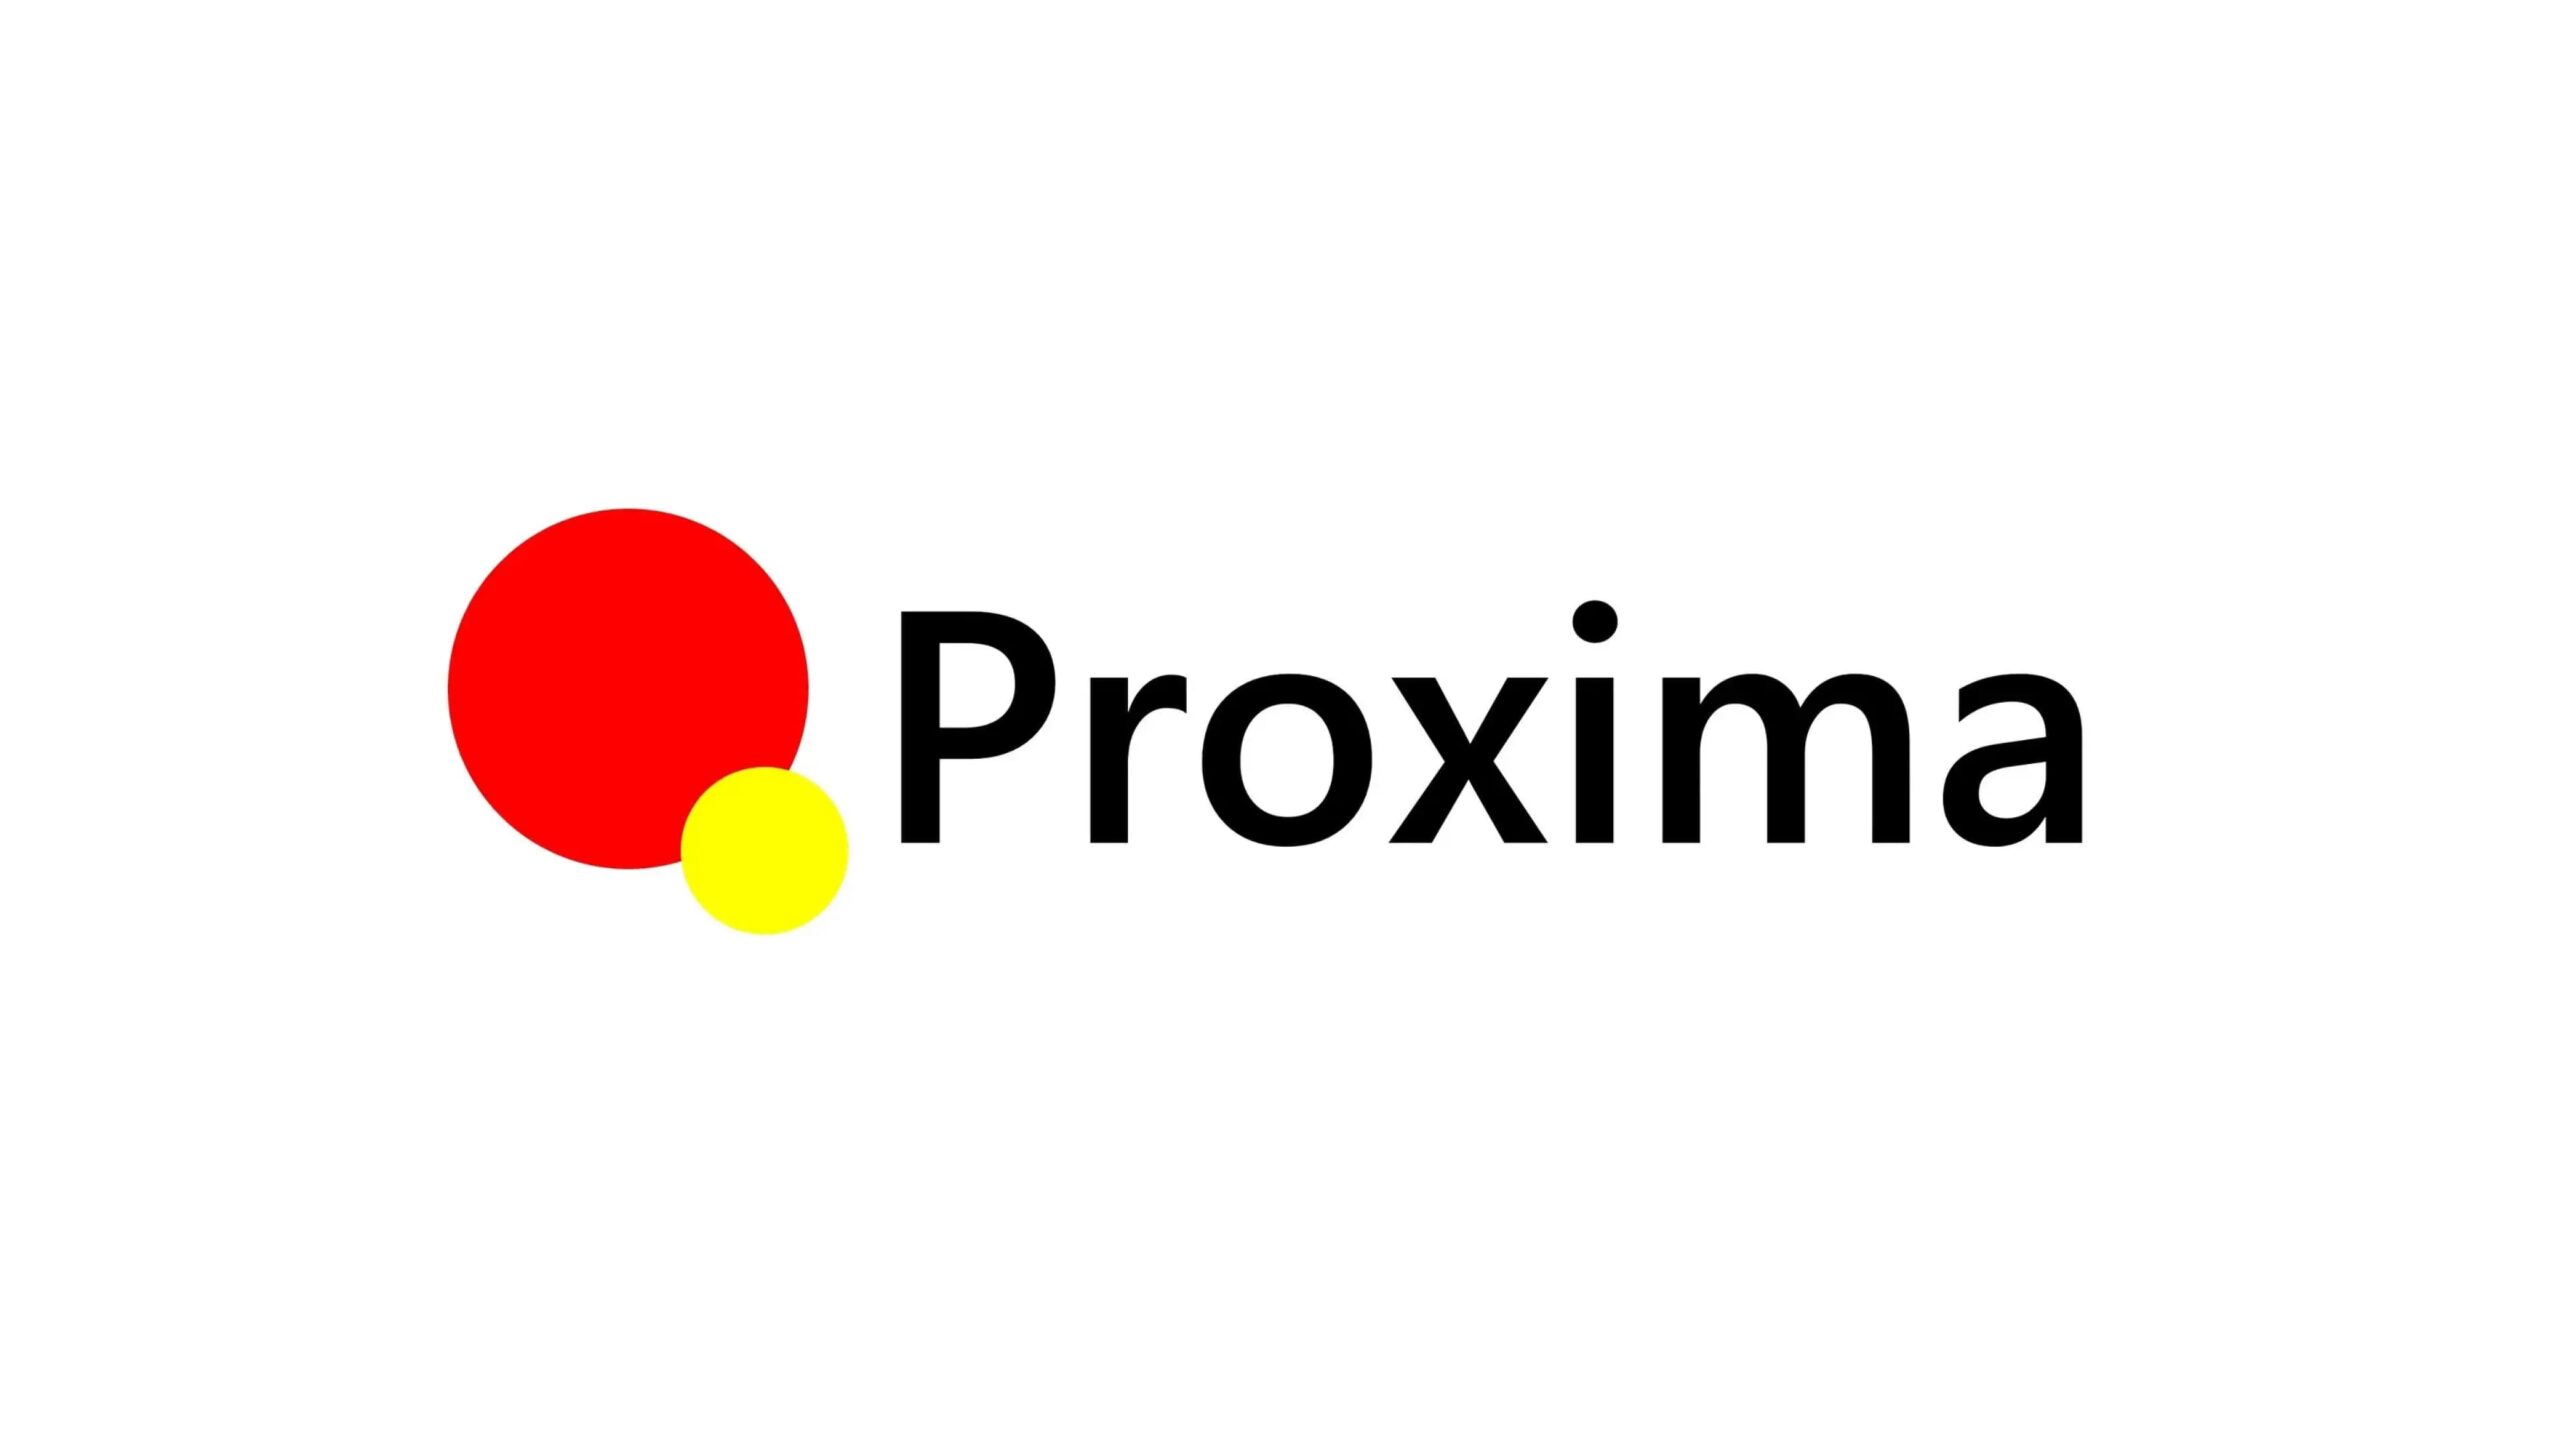 株式会社Proxima Technologyが5,000万円の資金調達ーシリーズA総額1.4億円に